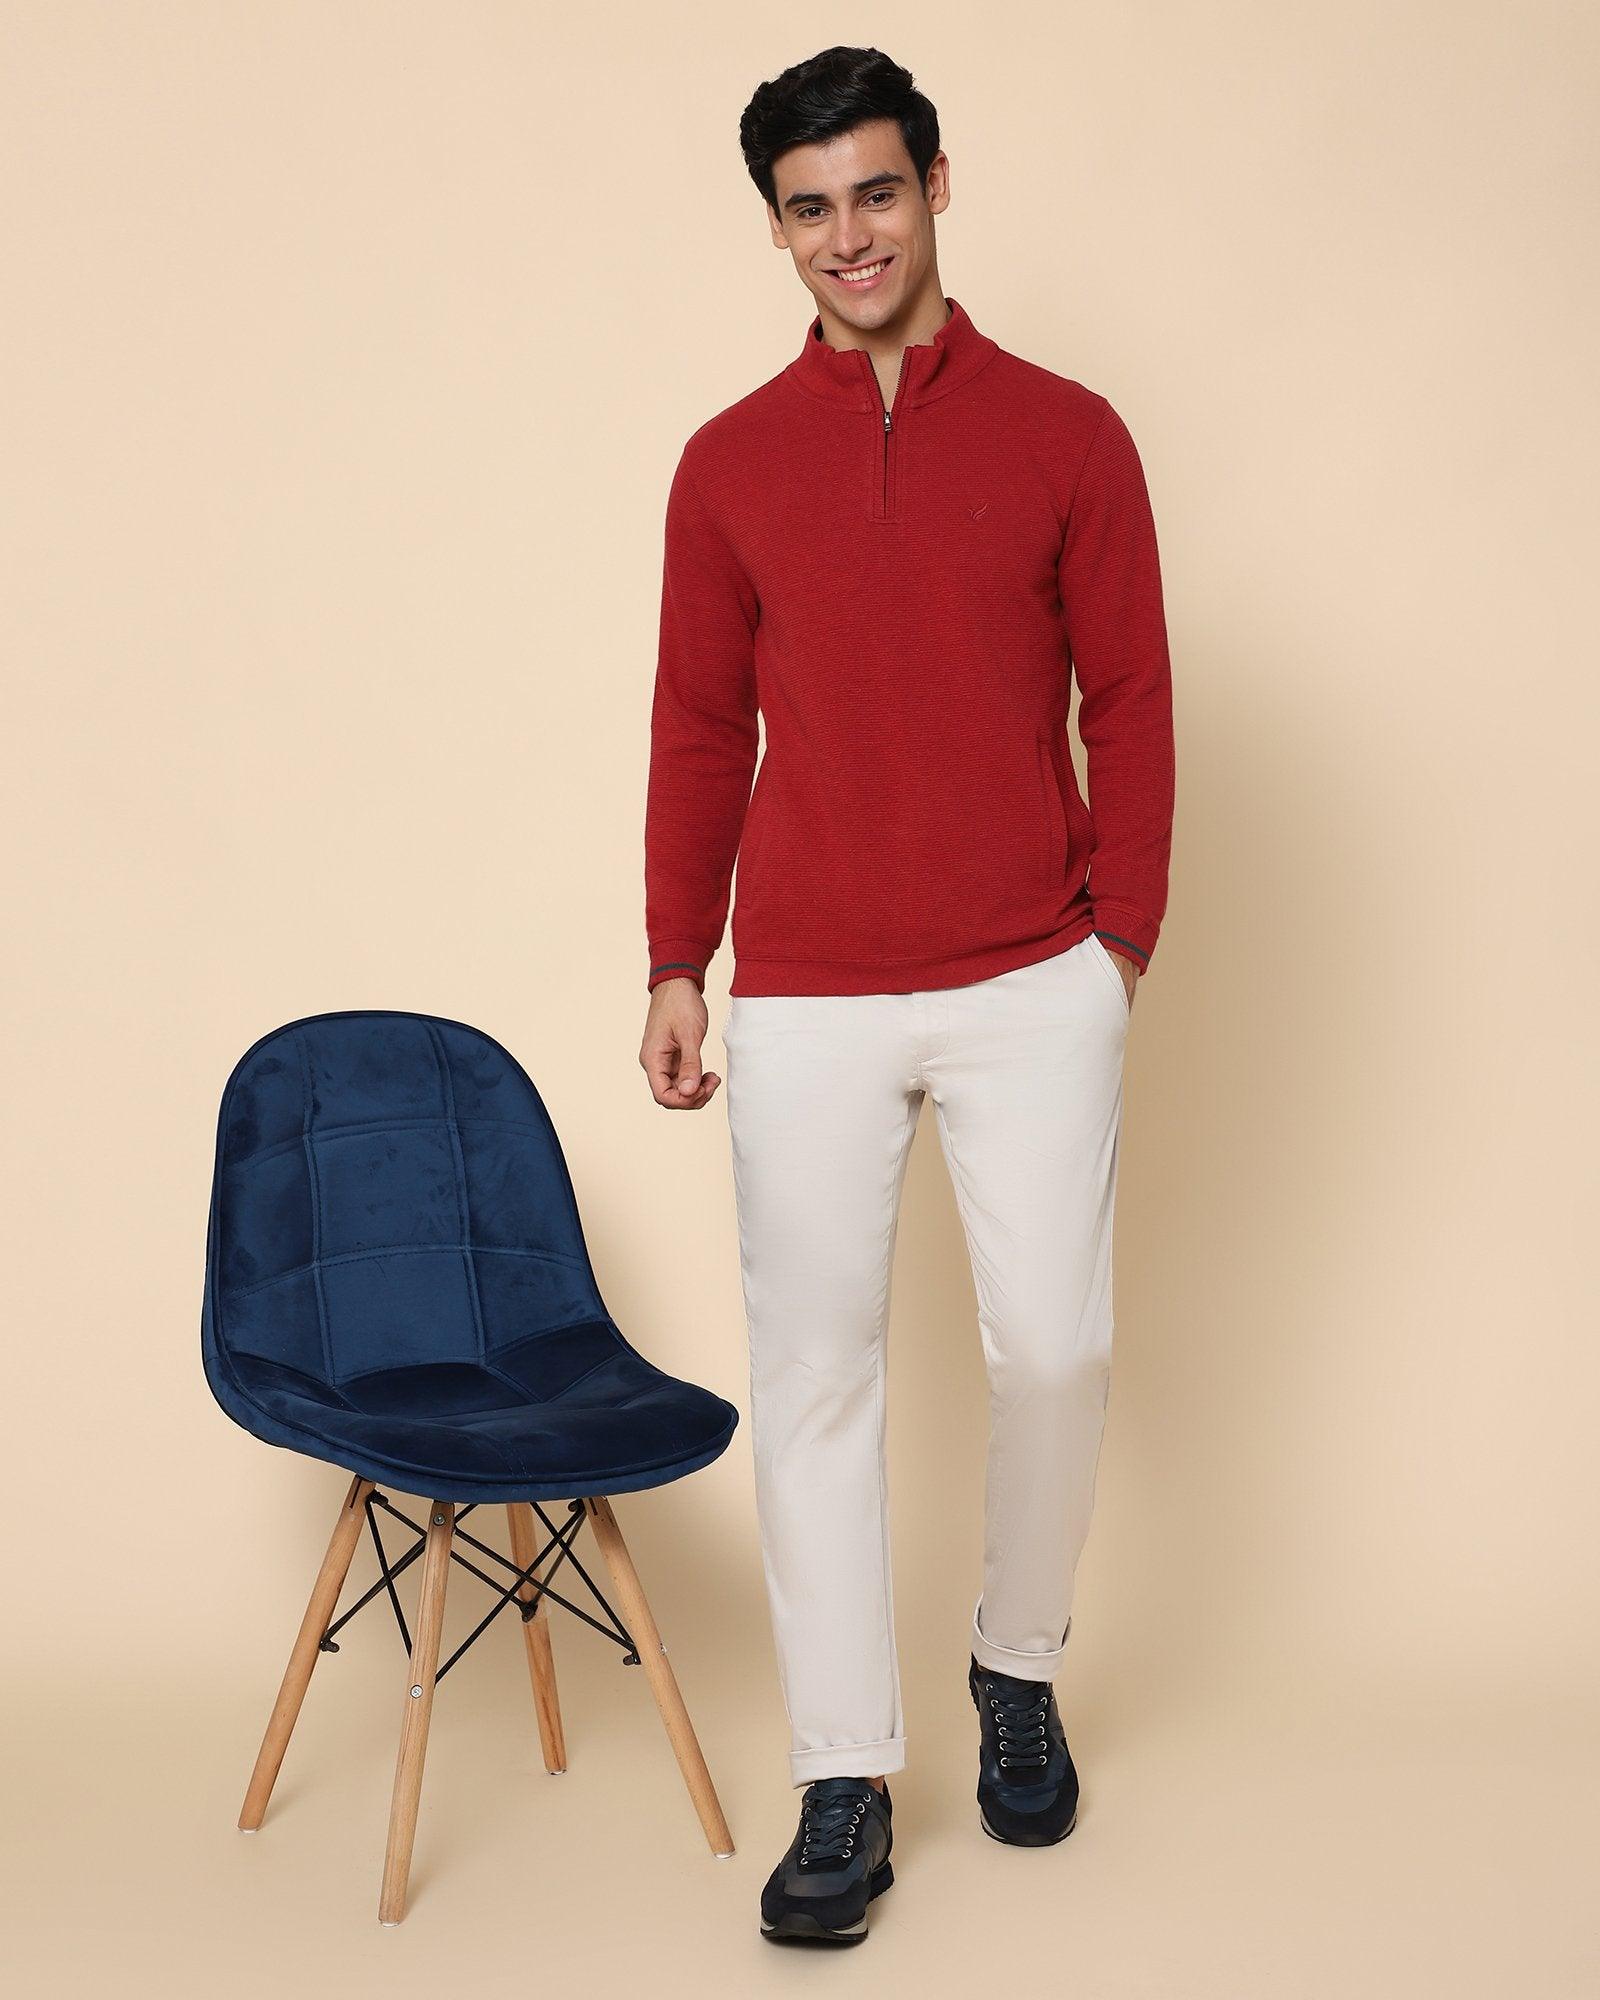 High Neck Red Melange Textured Sweatshirt - Hamish